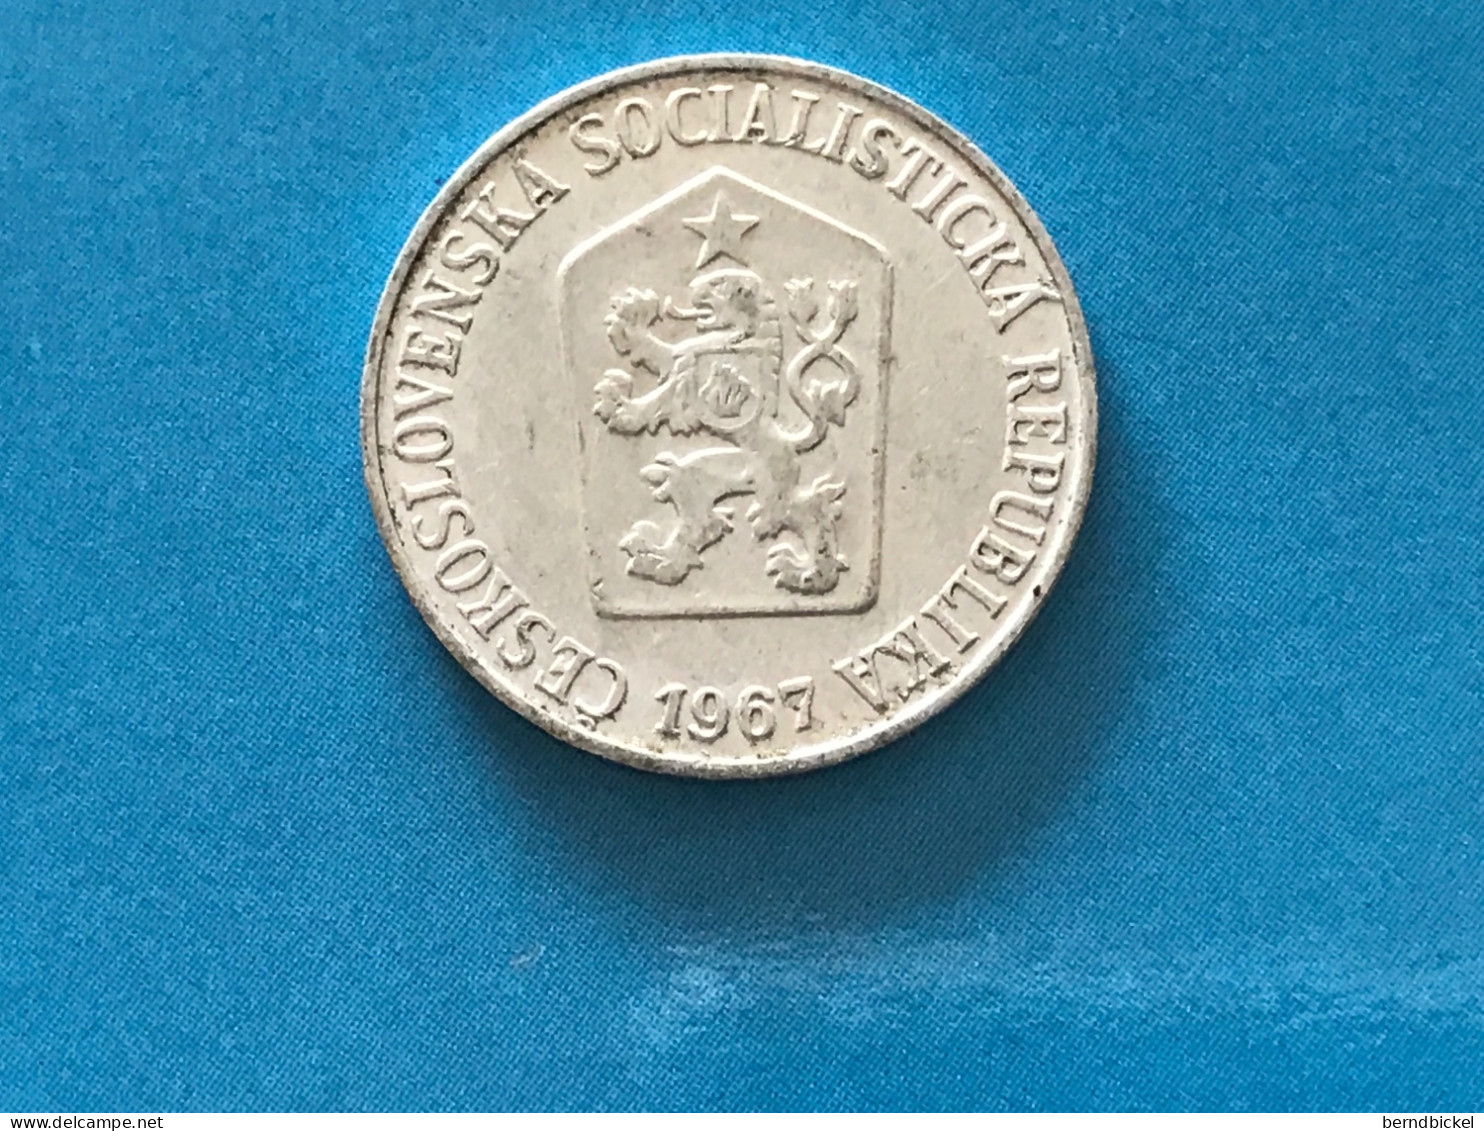 Münze Münzen Umlaufmünze Tschechoslowakei 5 Heller 1967 - Checoslovaquia